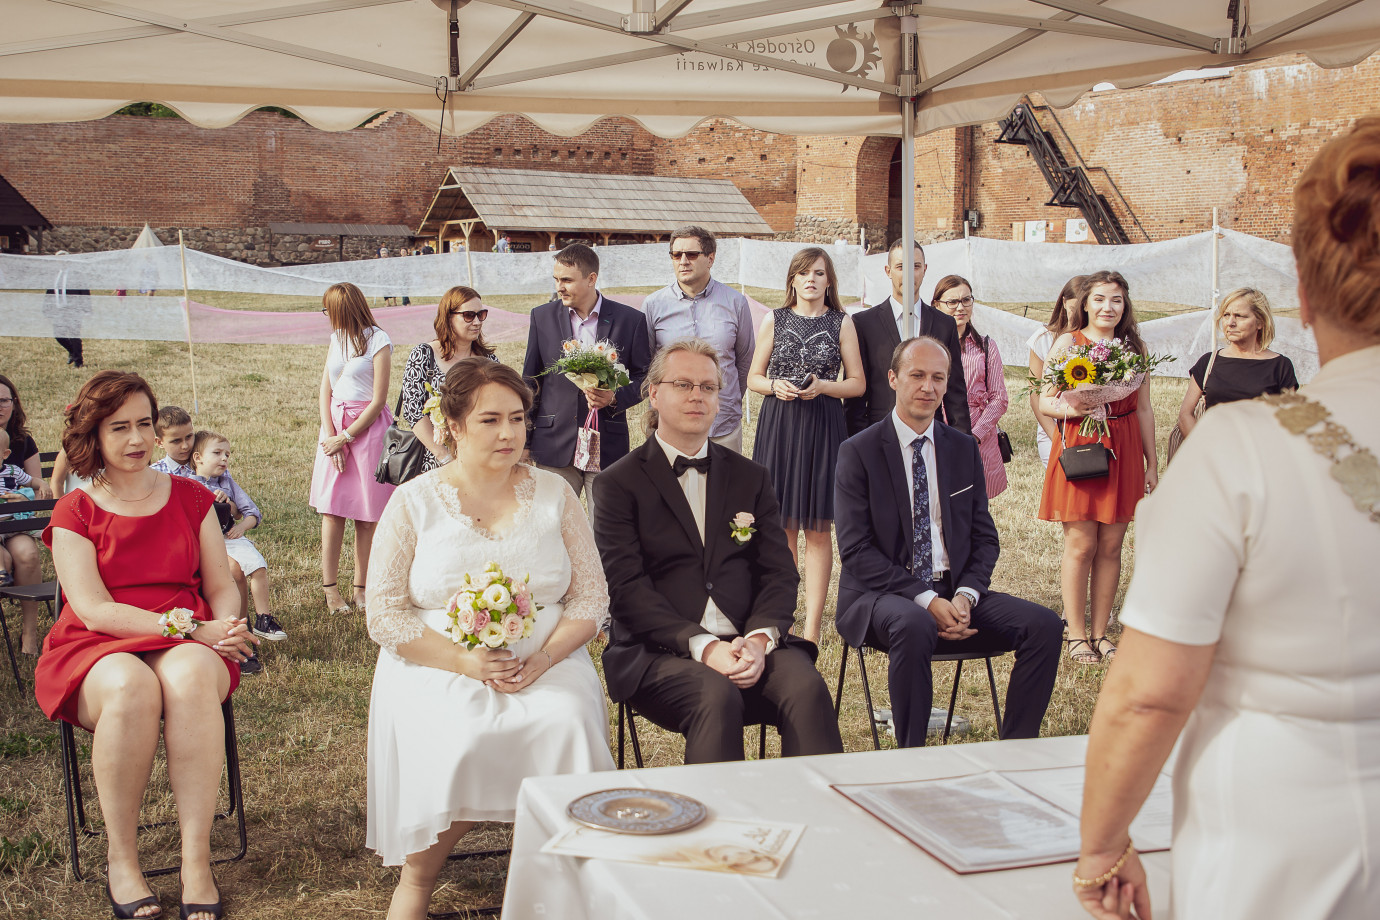 zdjęcia pruszkow fotograf adam-sledziak portfolio zdjecia slubne inspiracje wesele plener slubny sesja slubna